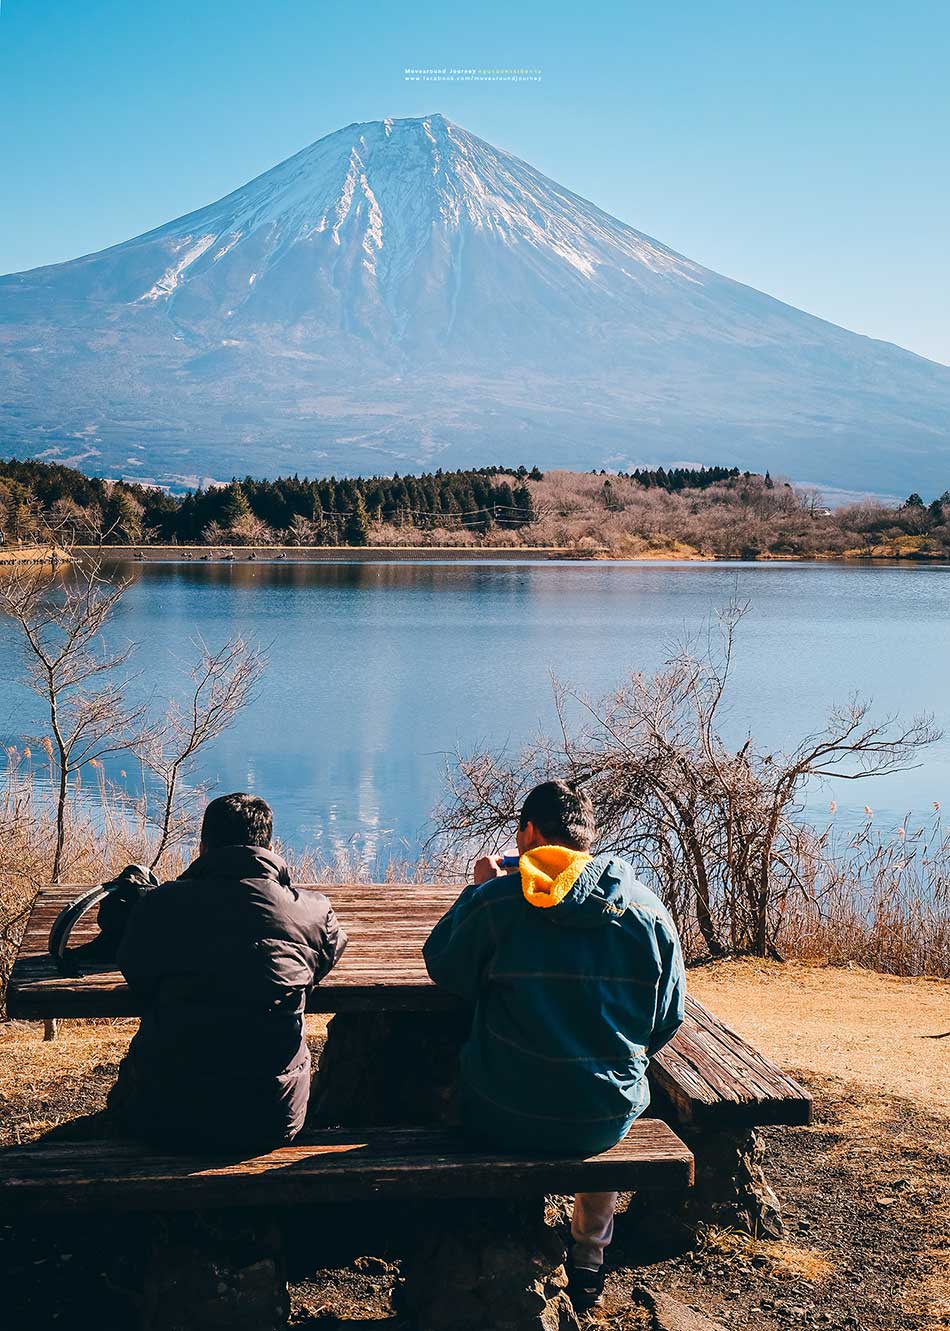 มุมถ่ายรูปภูเขาไฟฟูจิ Lake Tanuki